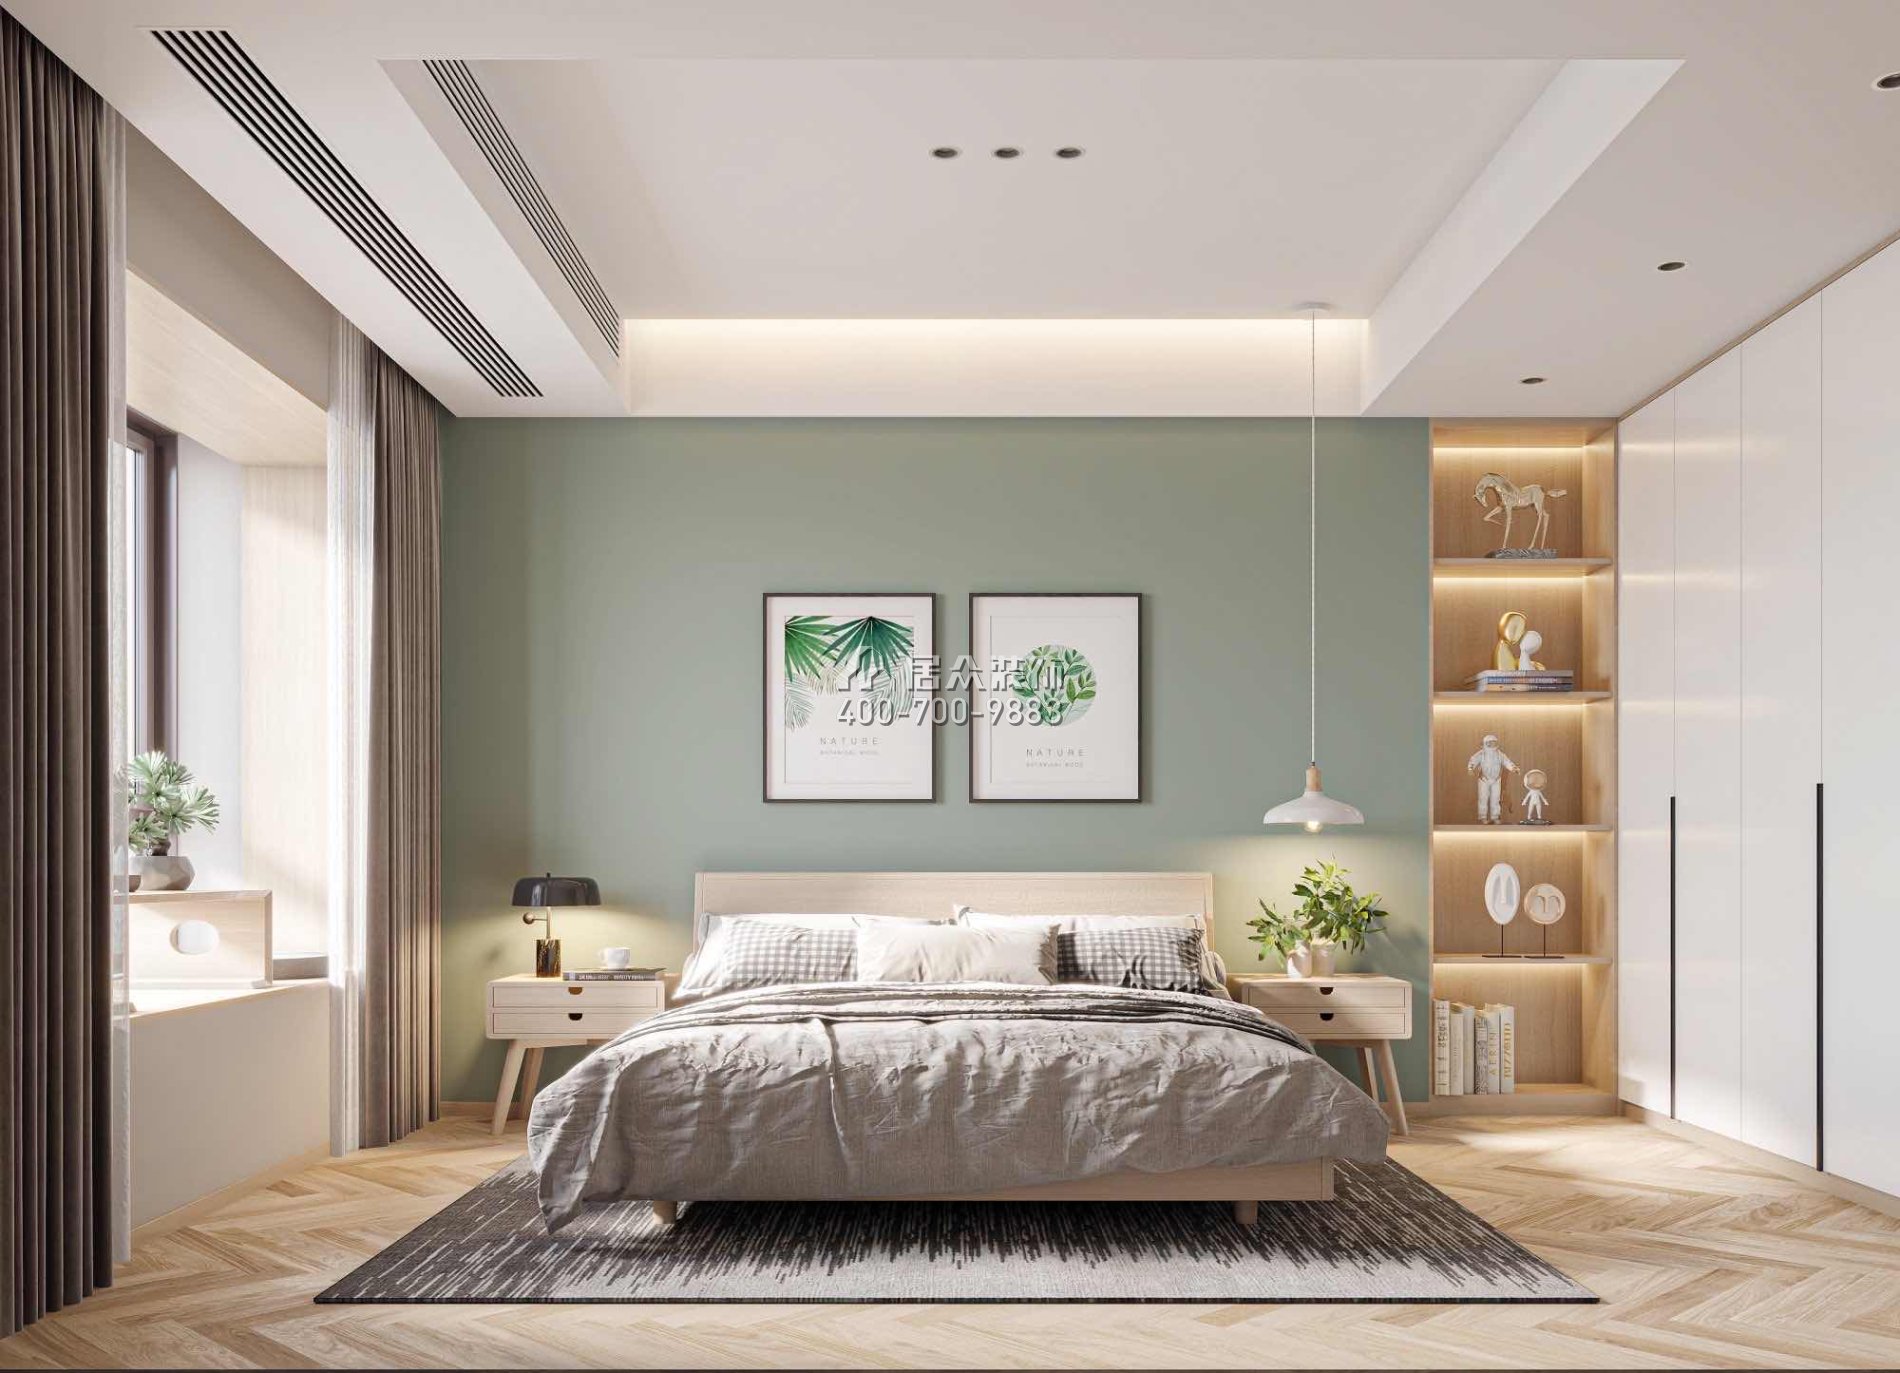 恒裕水墨蘭亭370平方米中式風格復式戶型臥室裝修效果圖